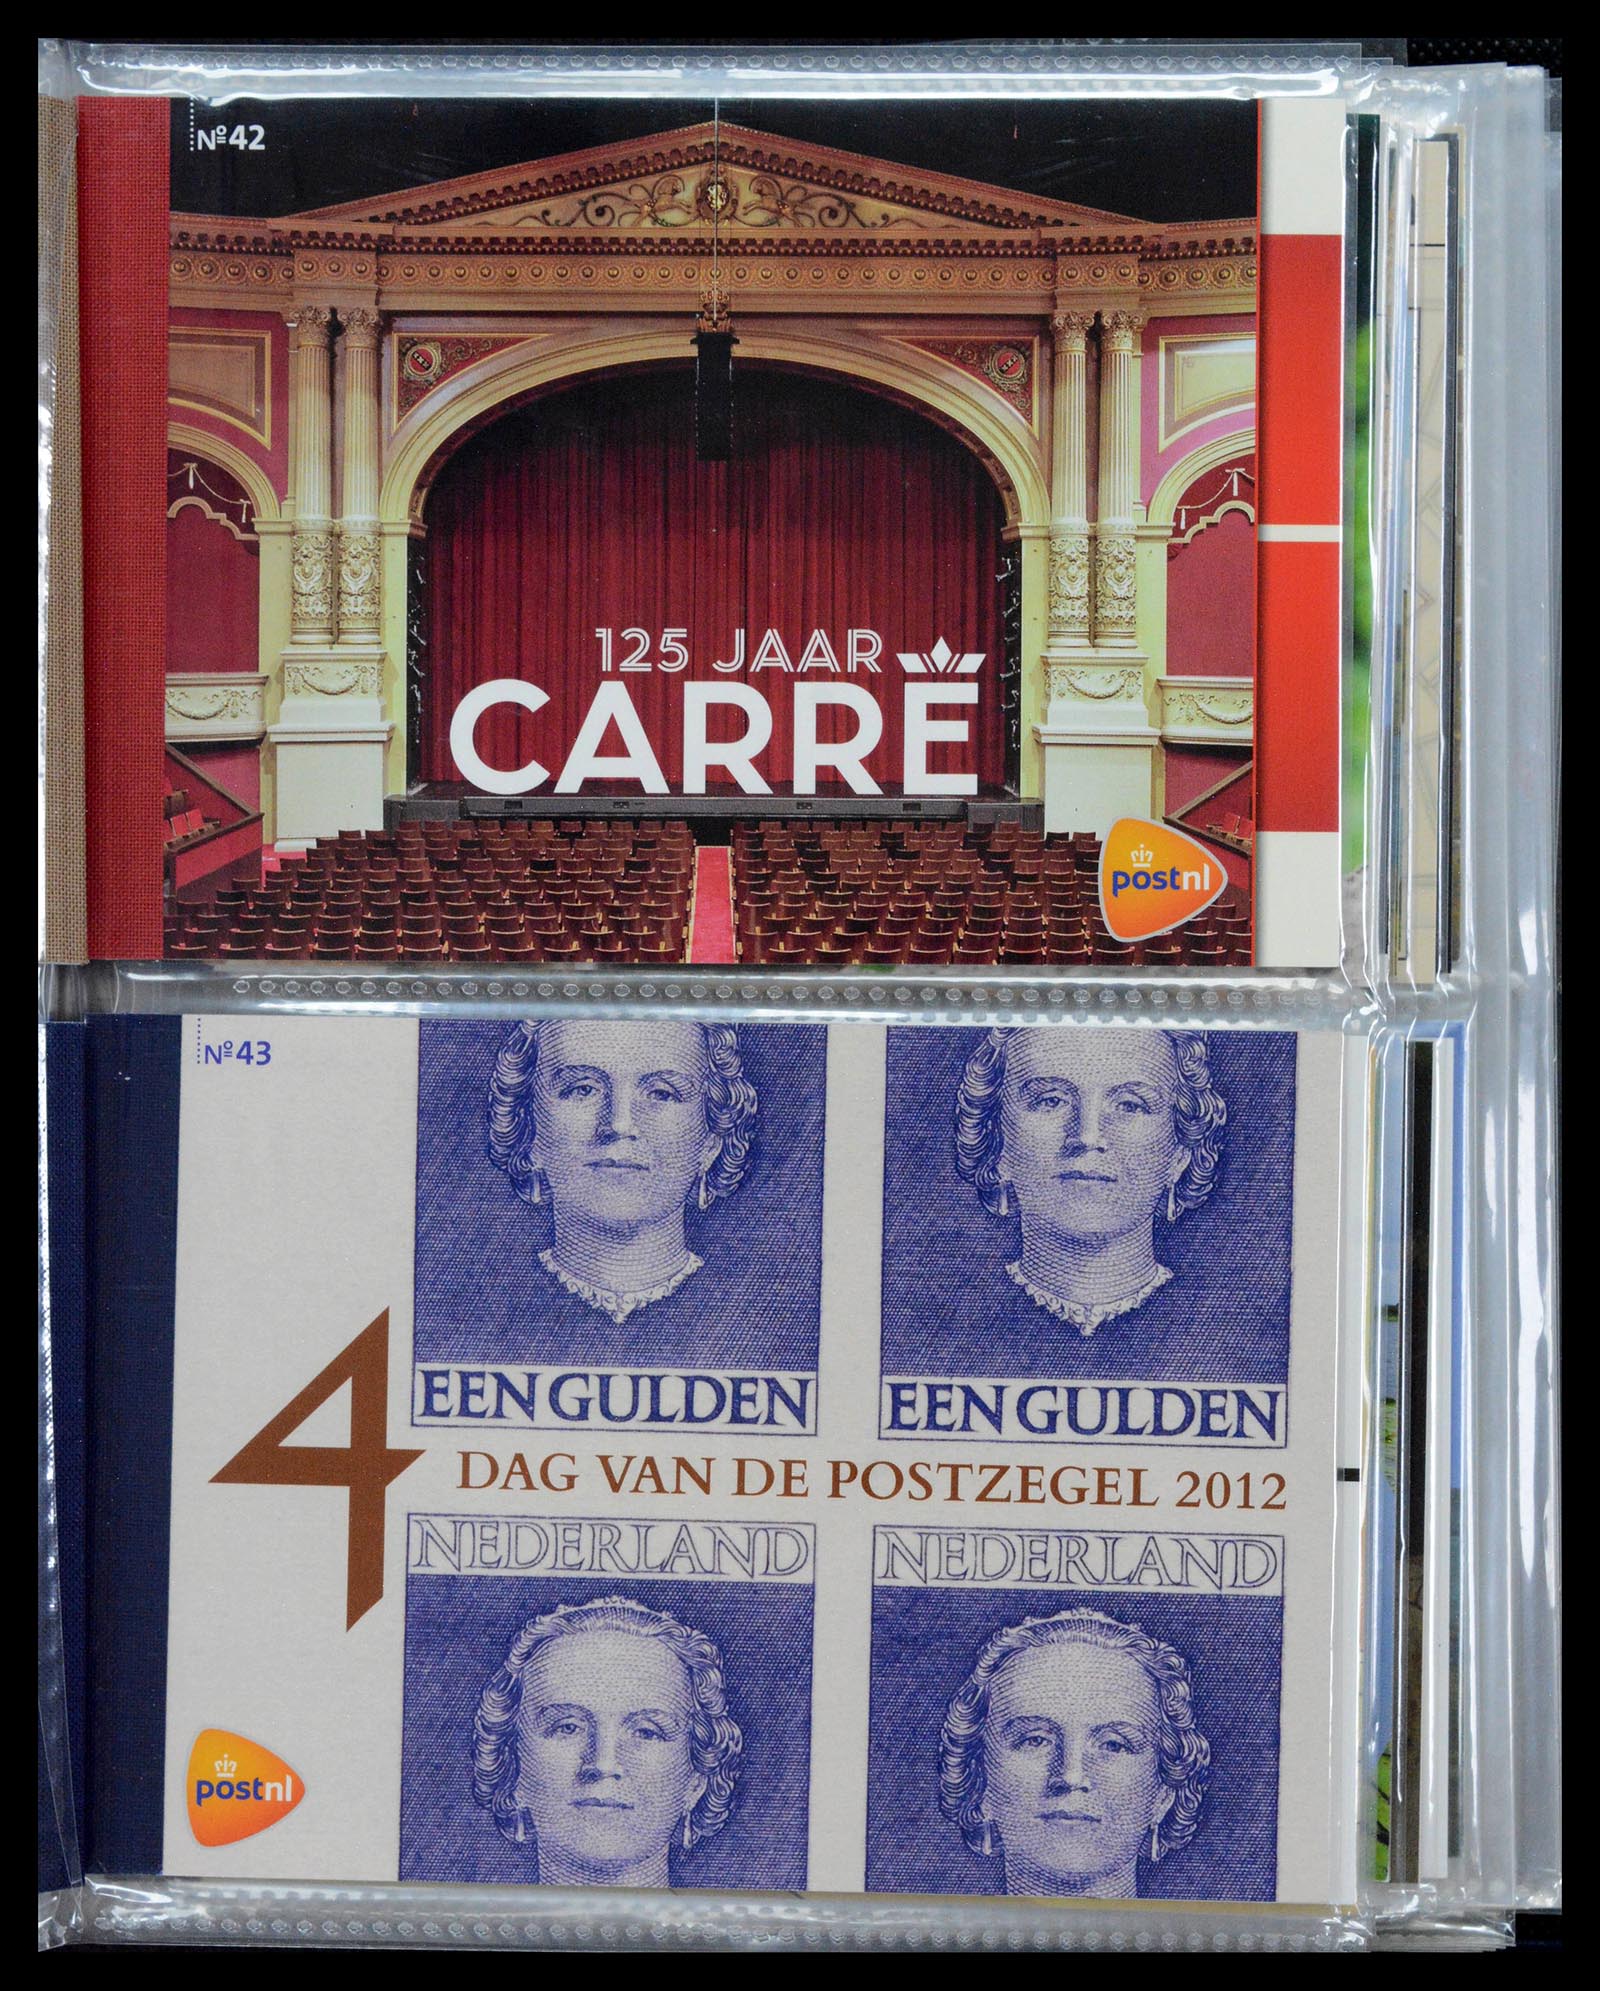 39018 0022 - Stamp collection 39018 Netherlands prestige booklets 2003-2016.